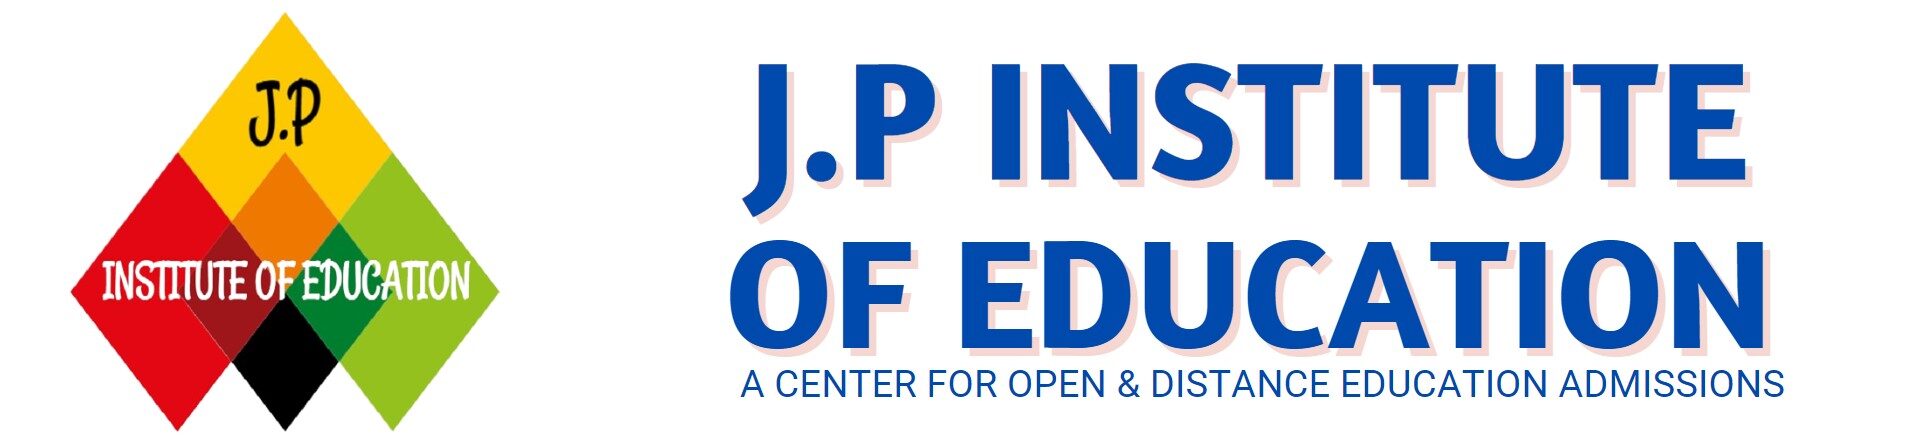 J.P INSTITUTE OF EDUCATION